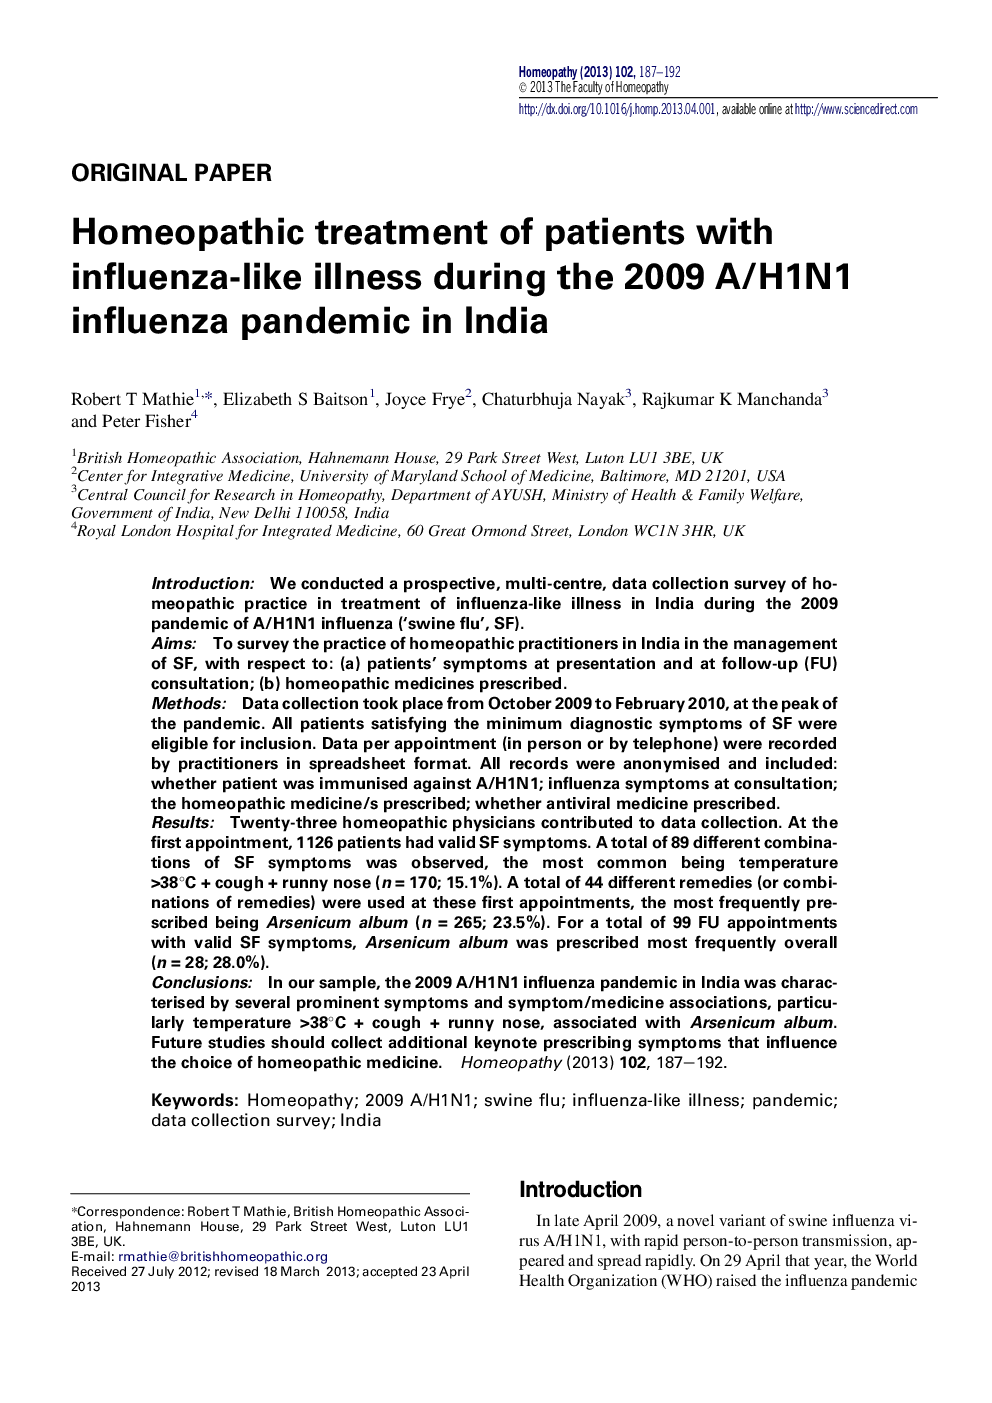 درمان هومیوپاتی بیماران مبتلا به بیماری شبه آنفولانزا در طی همه گیری آنفلوانزای 2009 A/H1N1 در هند